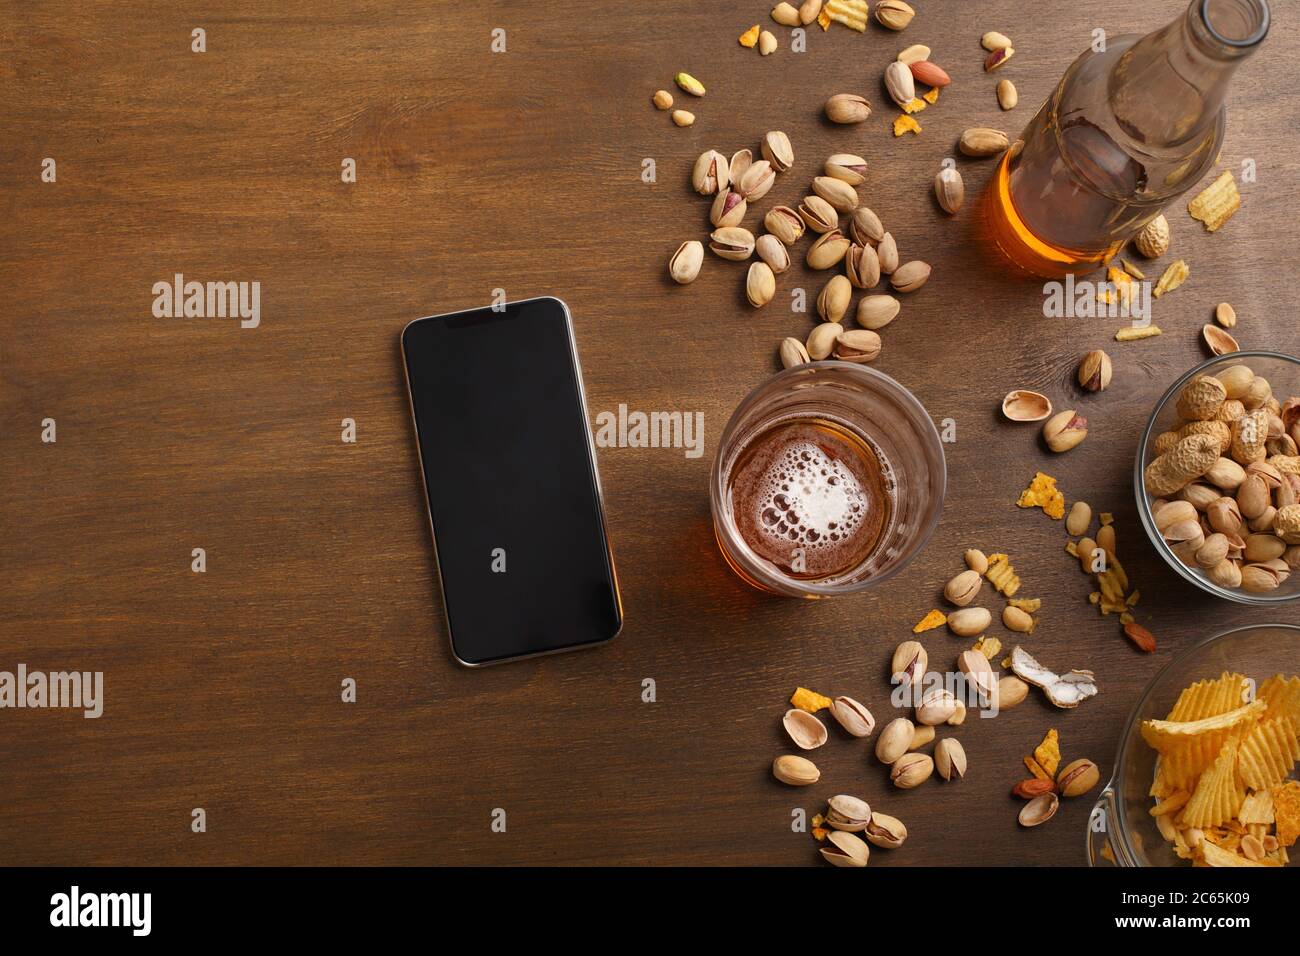 Smartphone auf Holztisch, neben einem Glas Bier mit Schaum, Flasche, Nüsse, Chips in Glasplatten Stockfoto